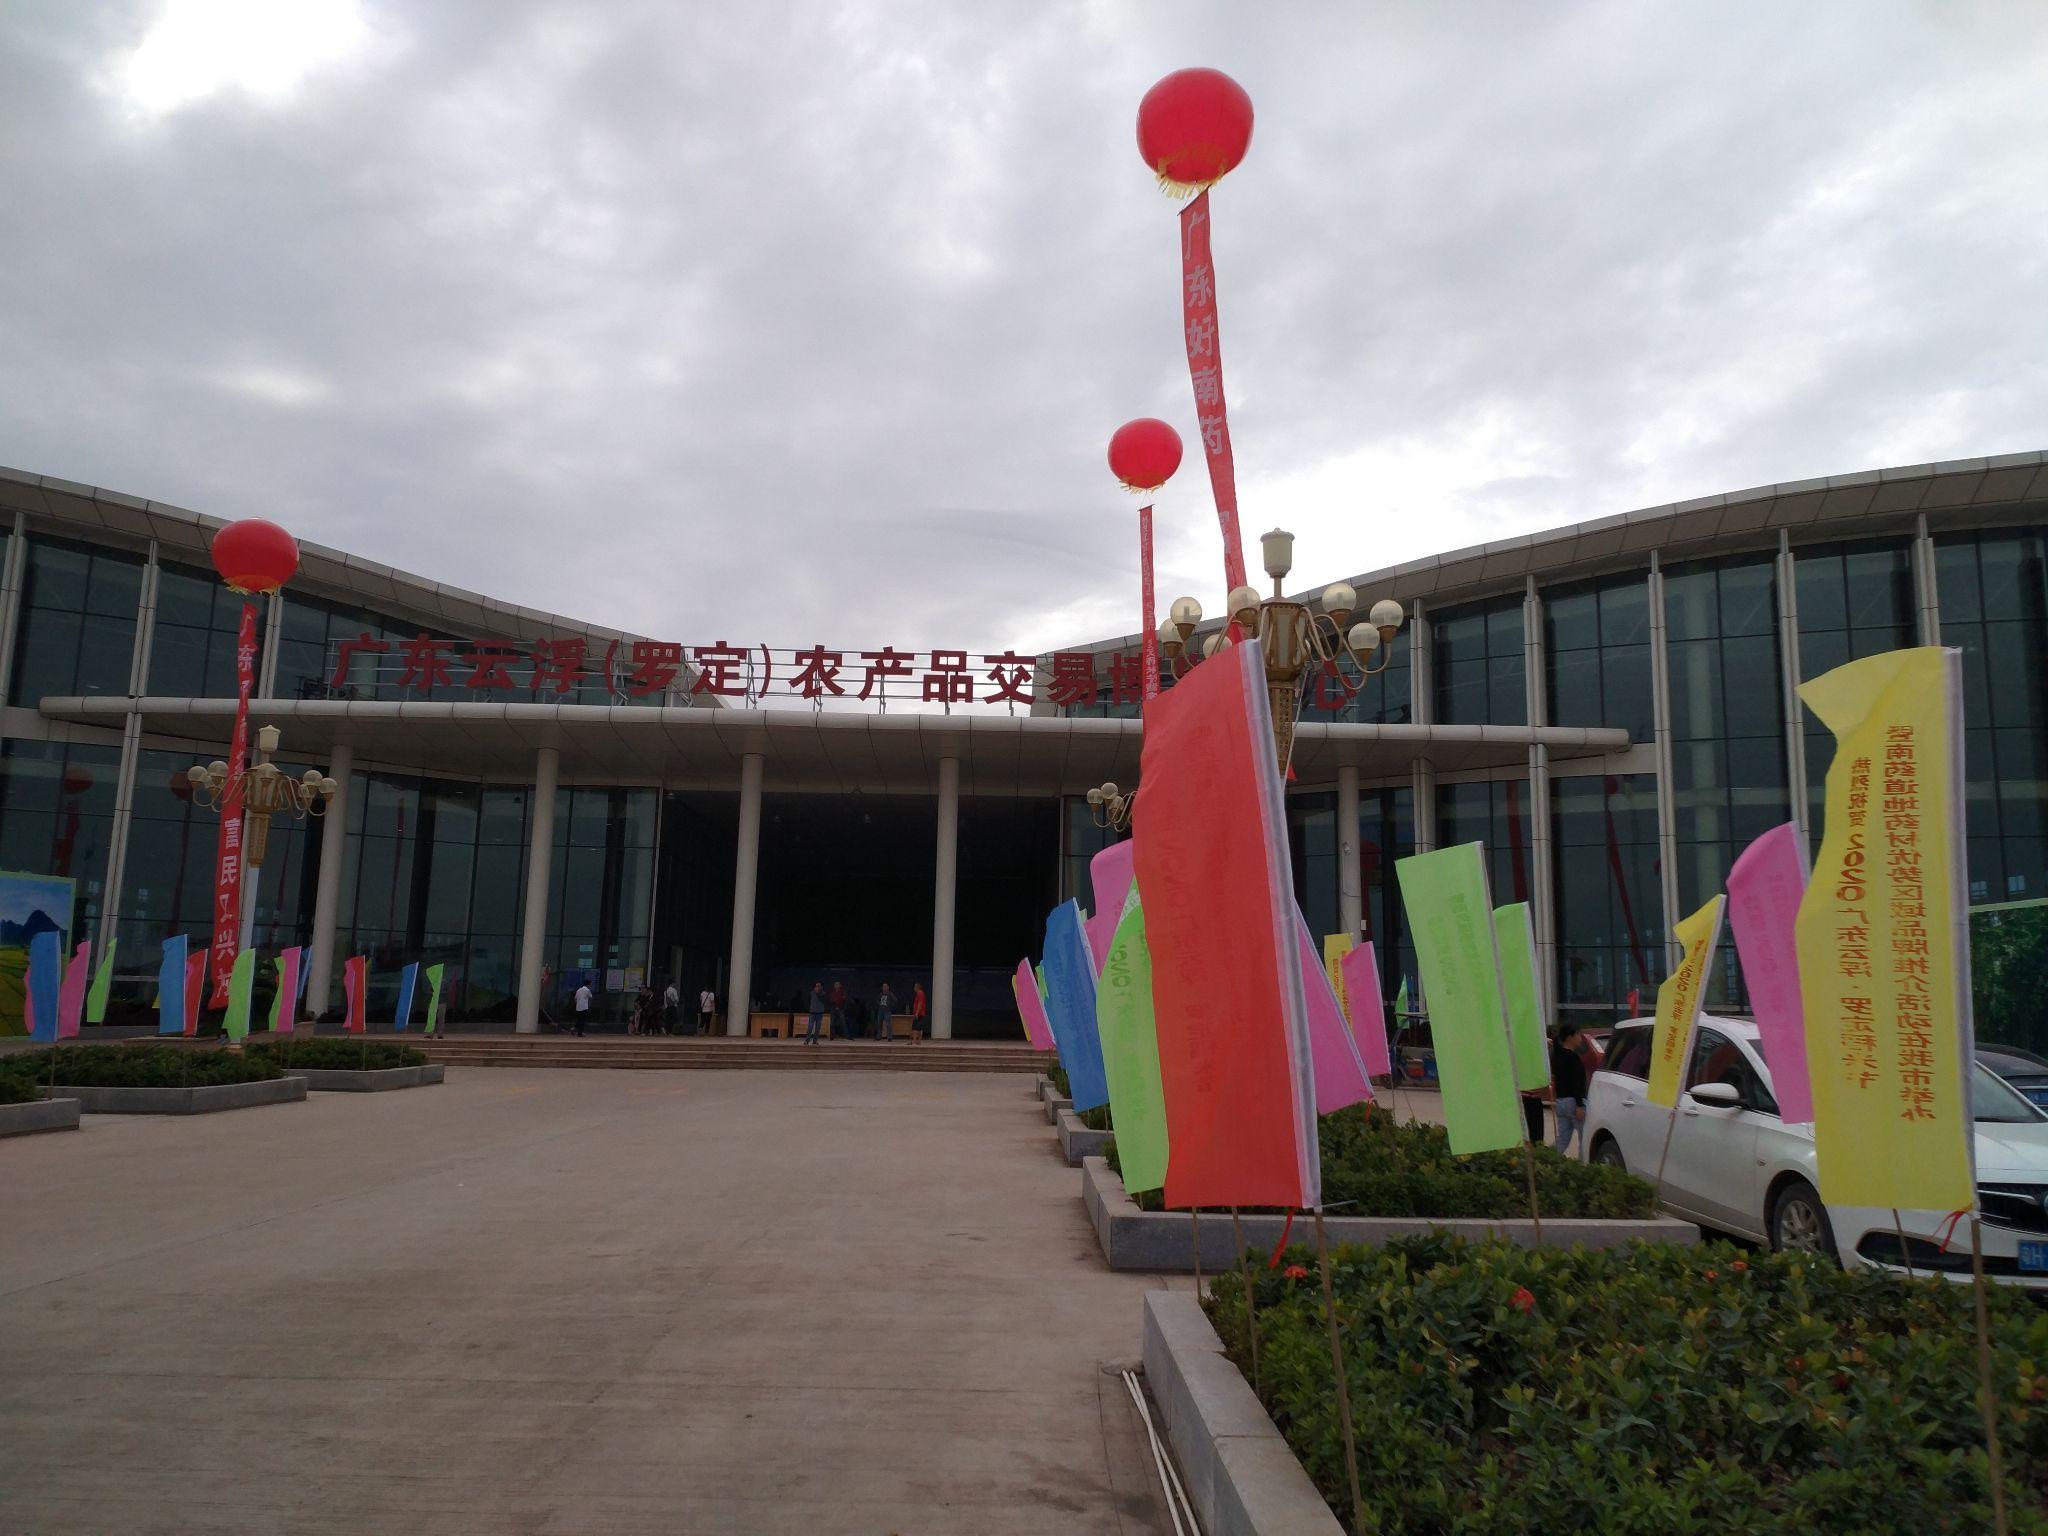 深圳市朗瑞旅游景观规划设计院有限公司